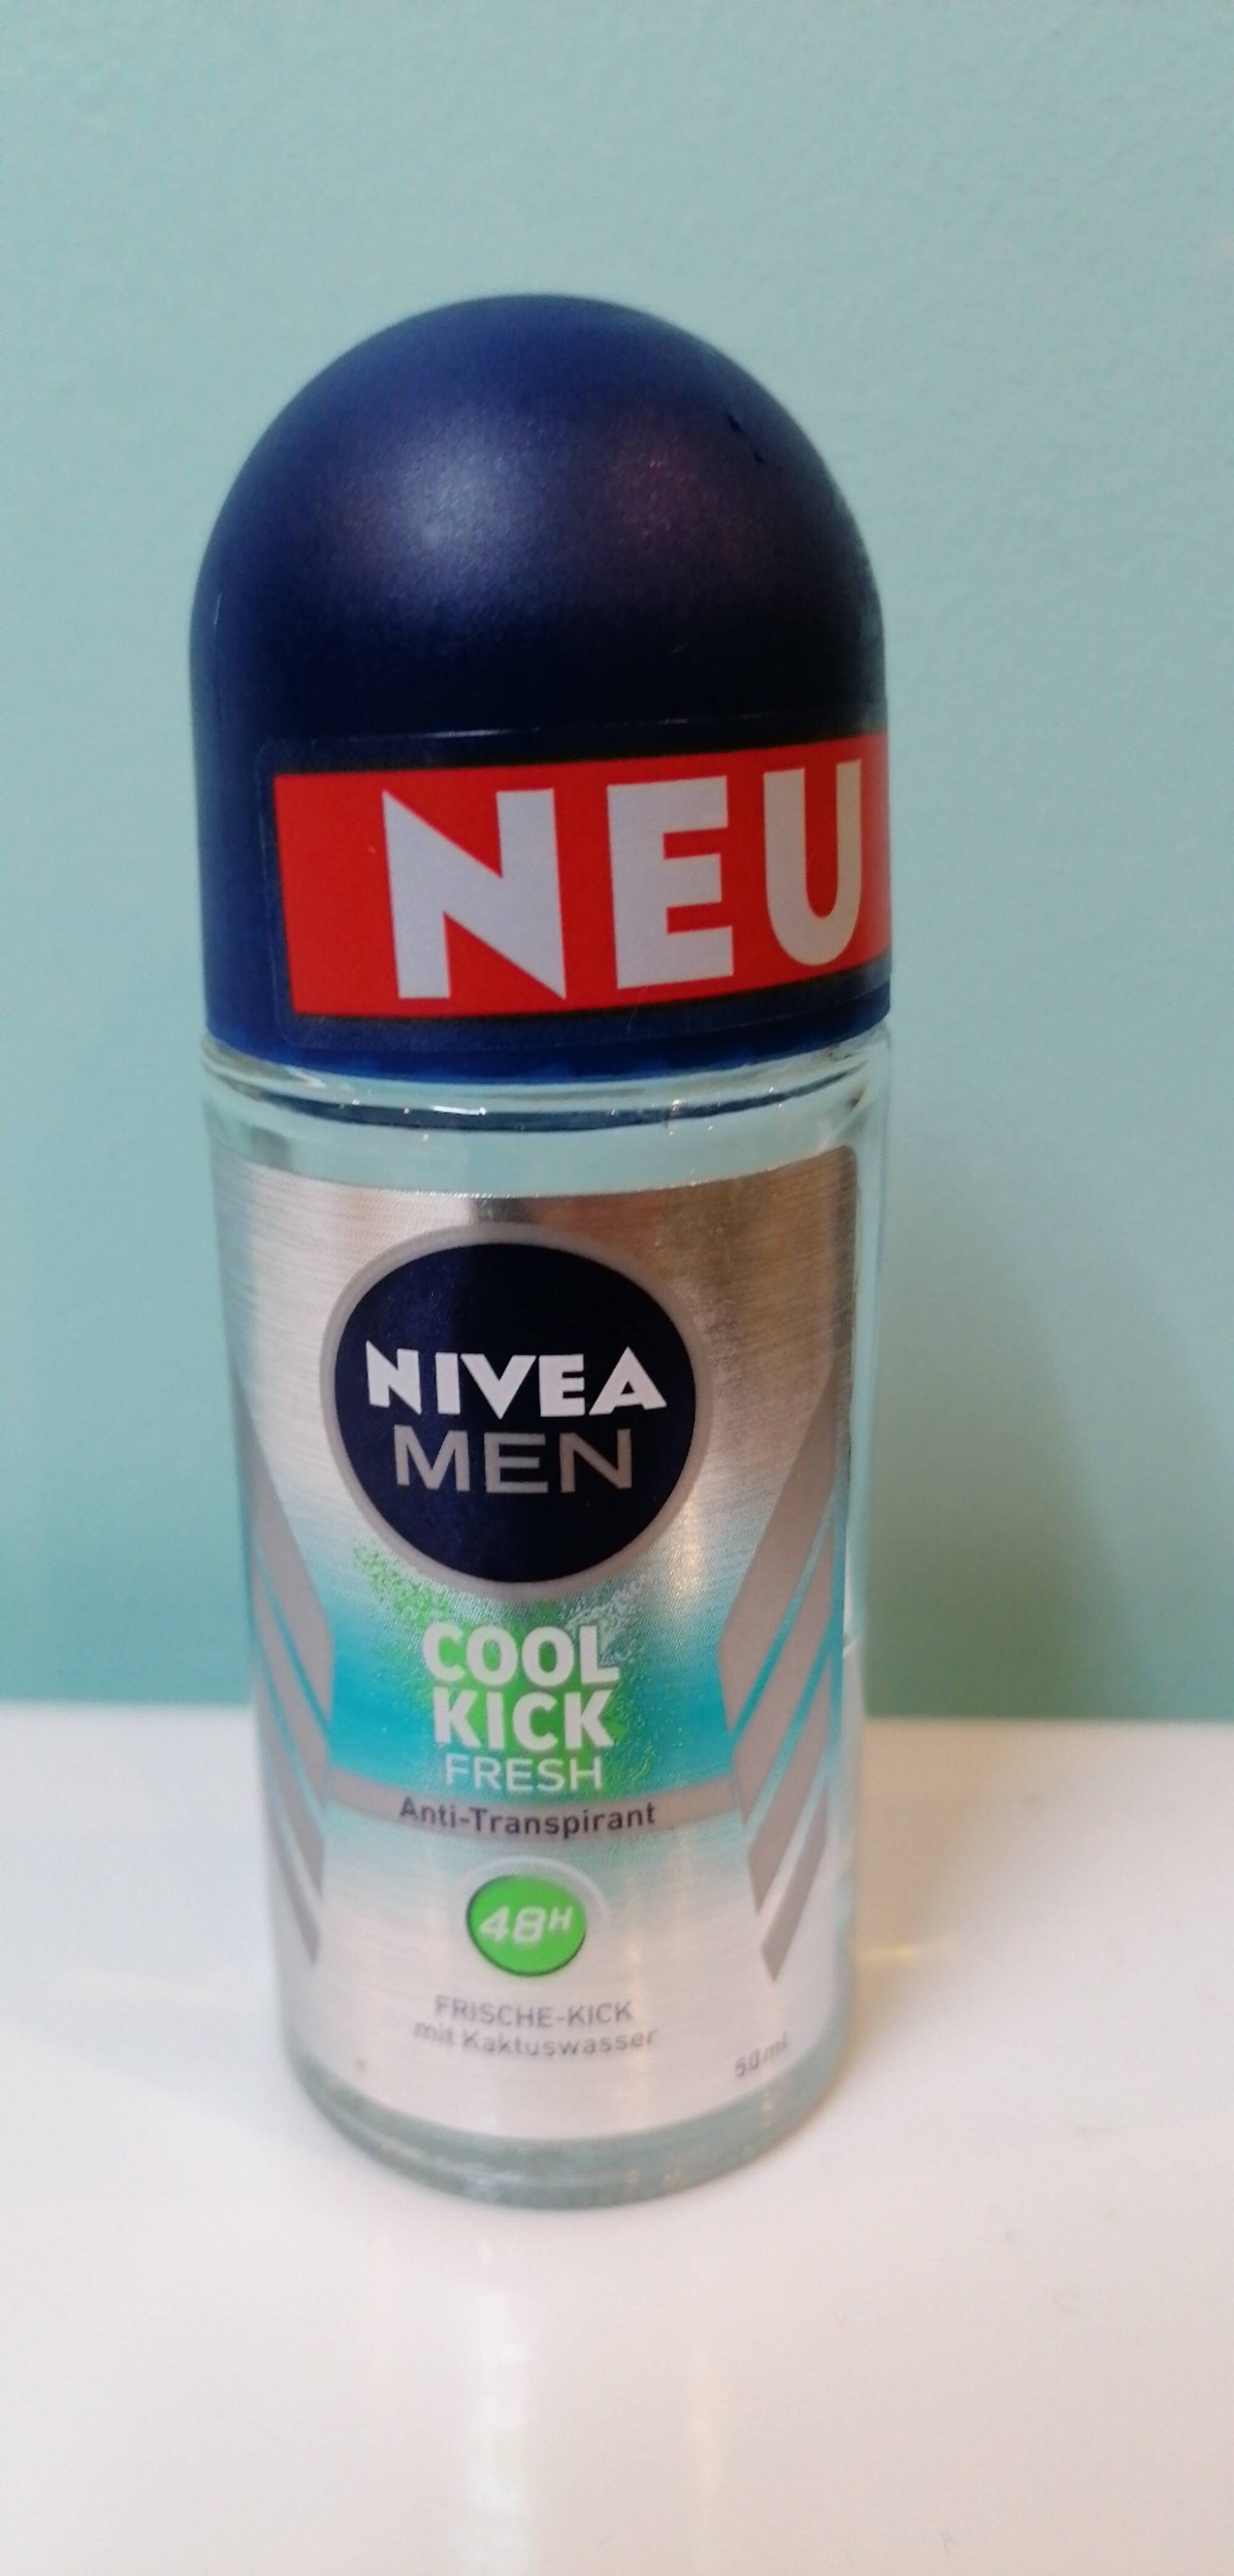 NIVEA MEN - Cool kick fresh - Anti-transpirant 48h